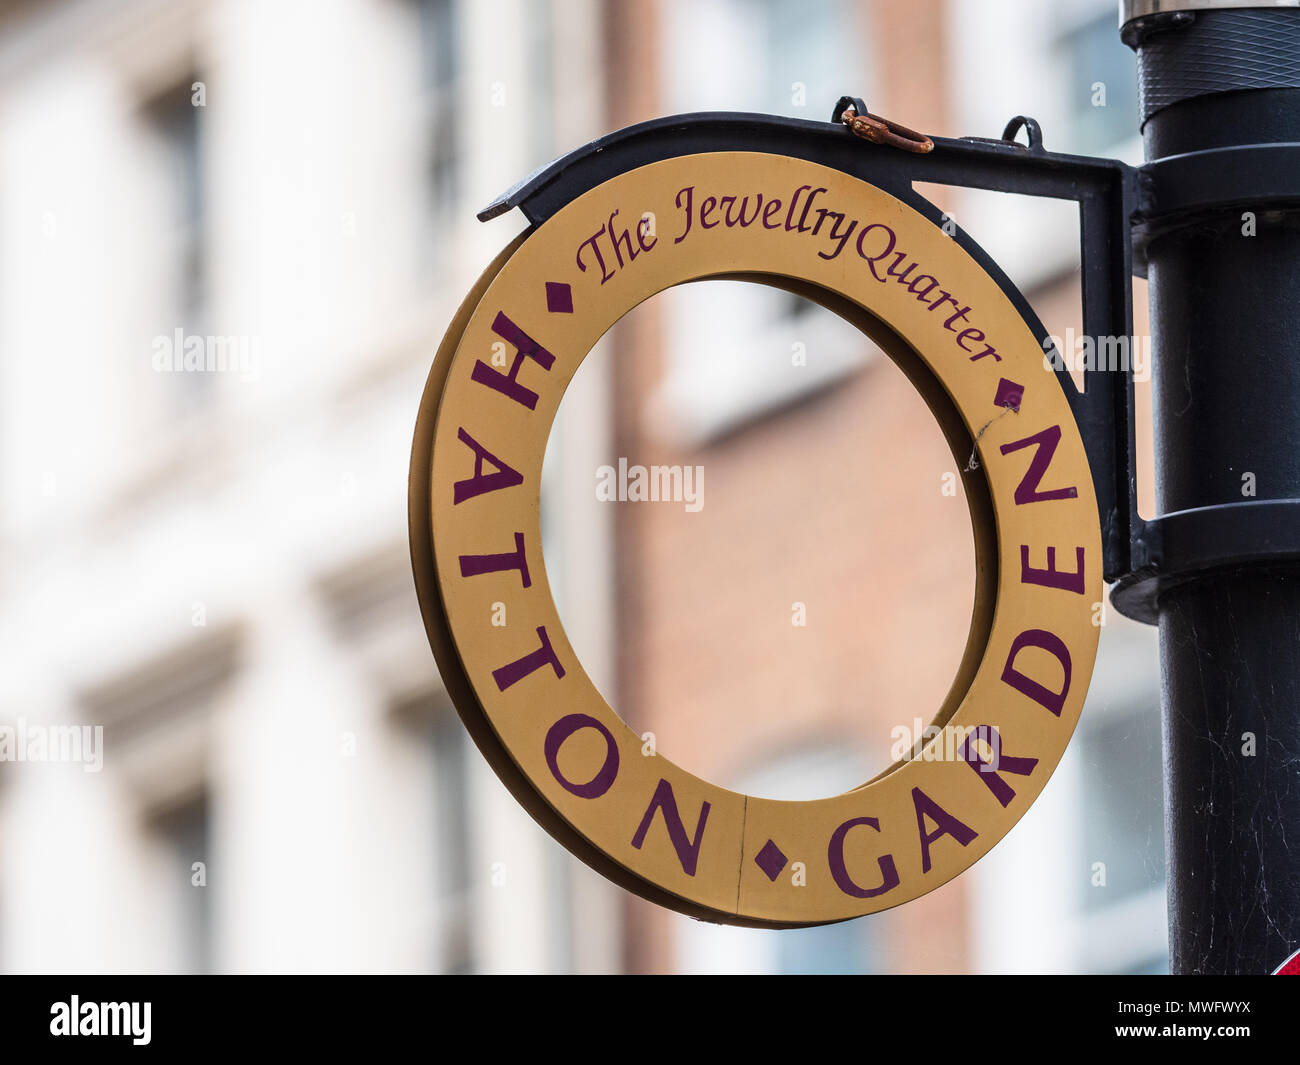 Hatton Garden Förderung Zeichen in der Form eines goldenen Ring - Hatton Garden ist London's Diamanten und Schmuck Bezirk Stockfoto